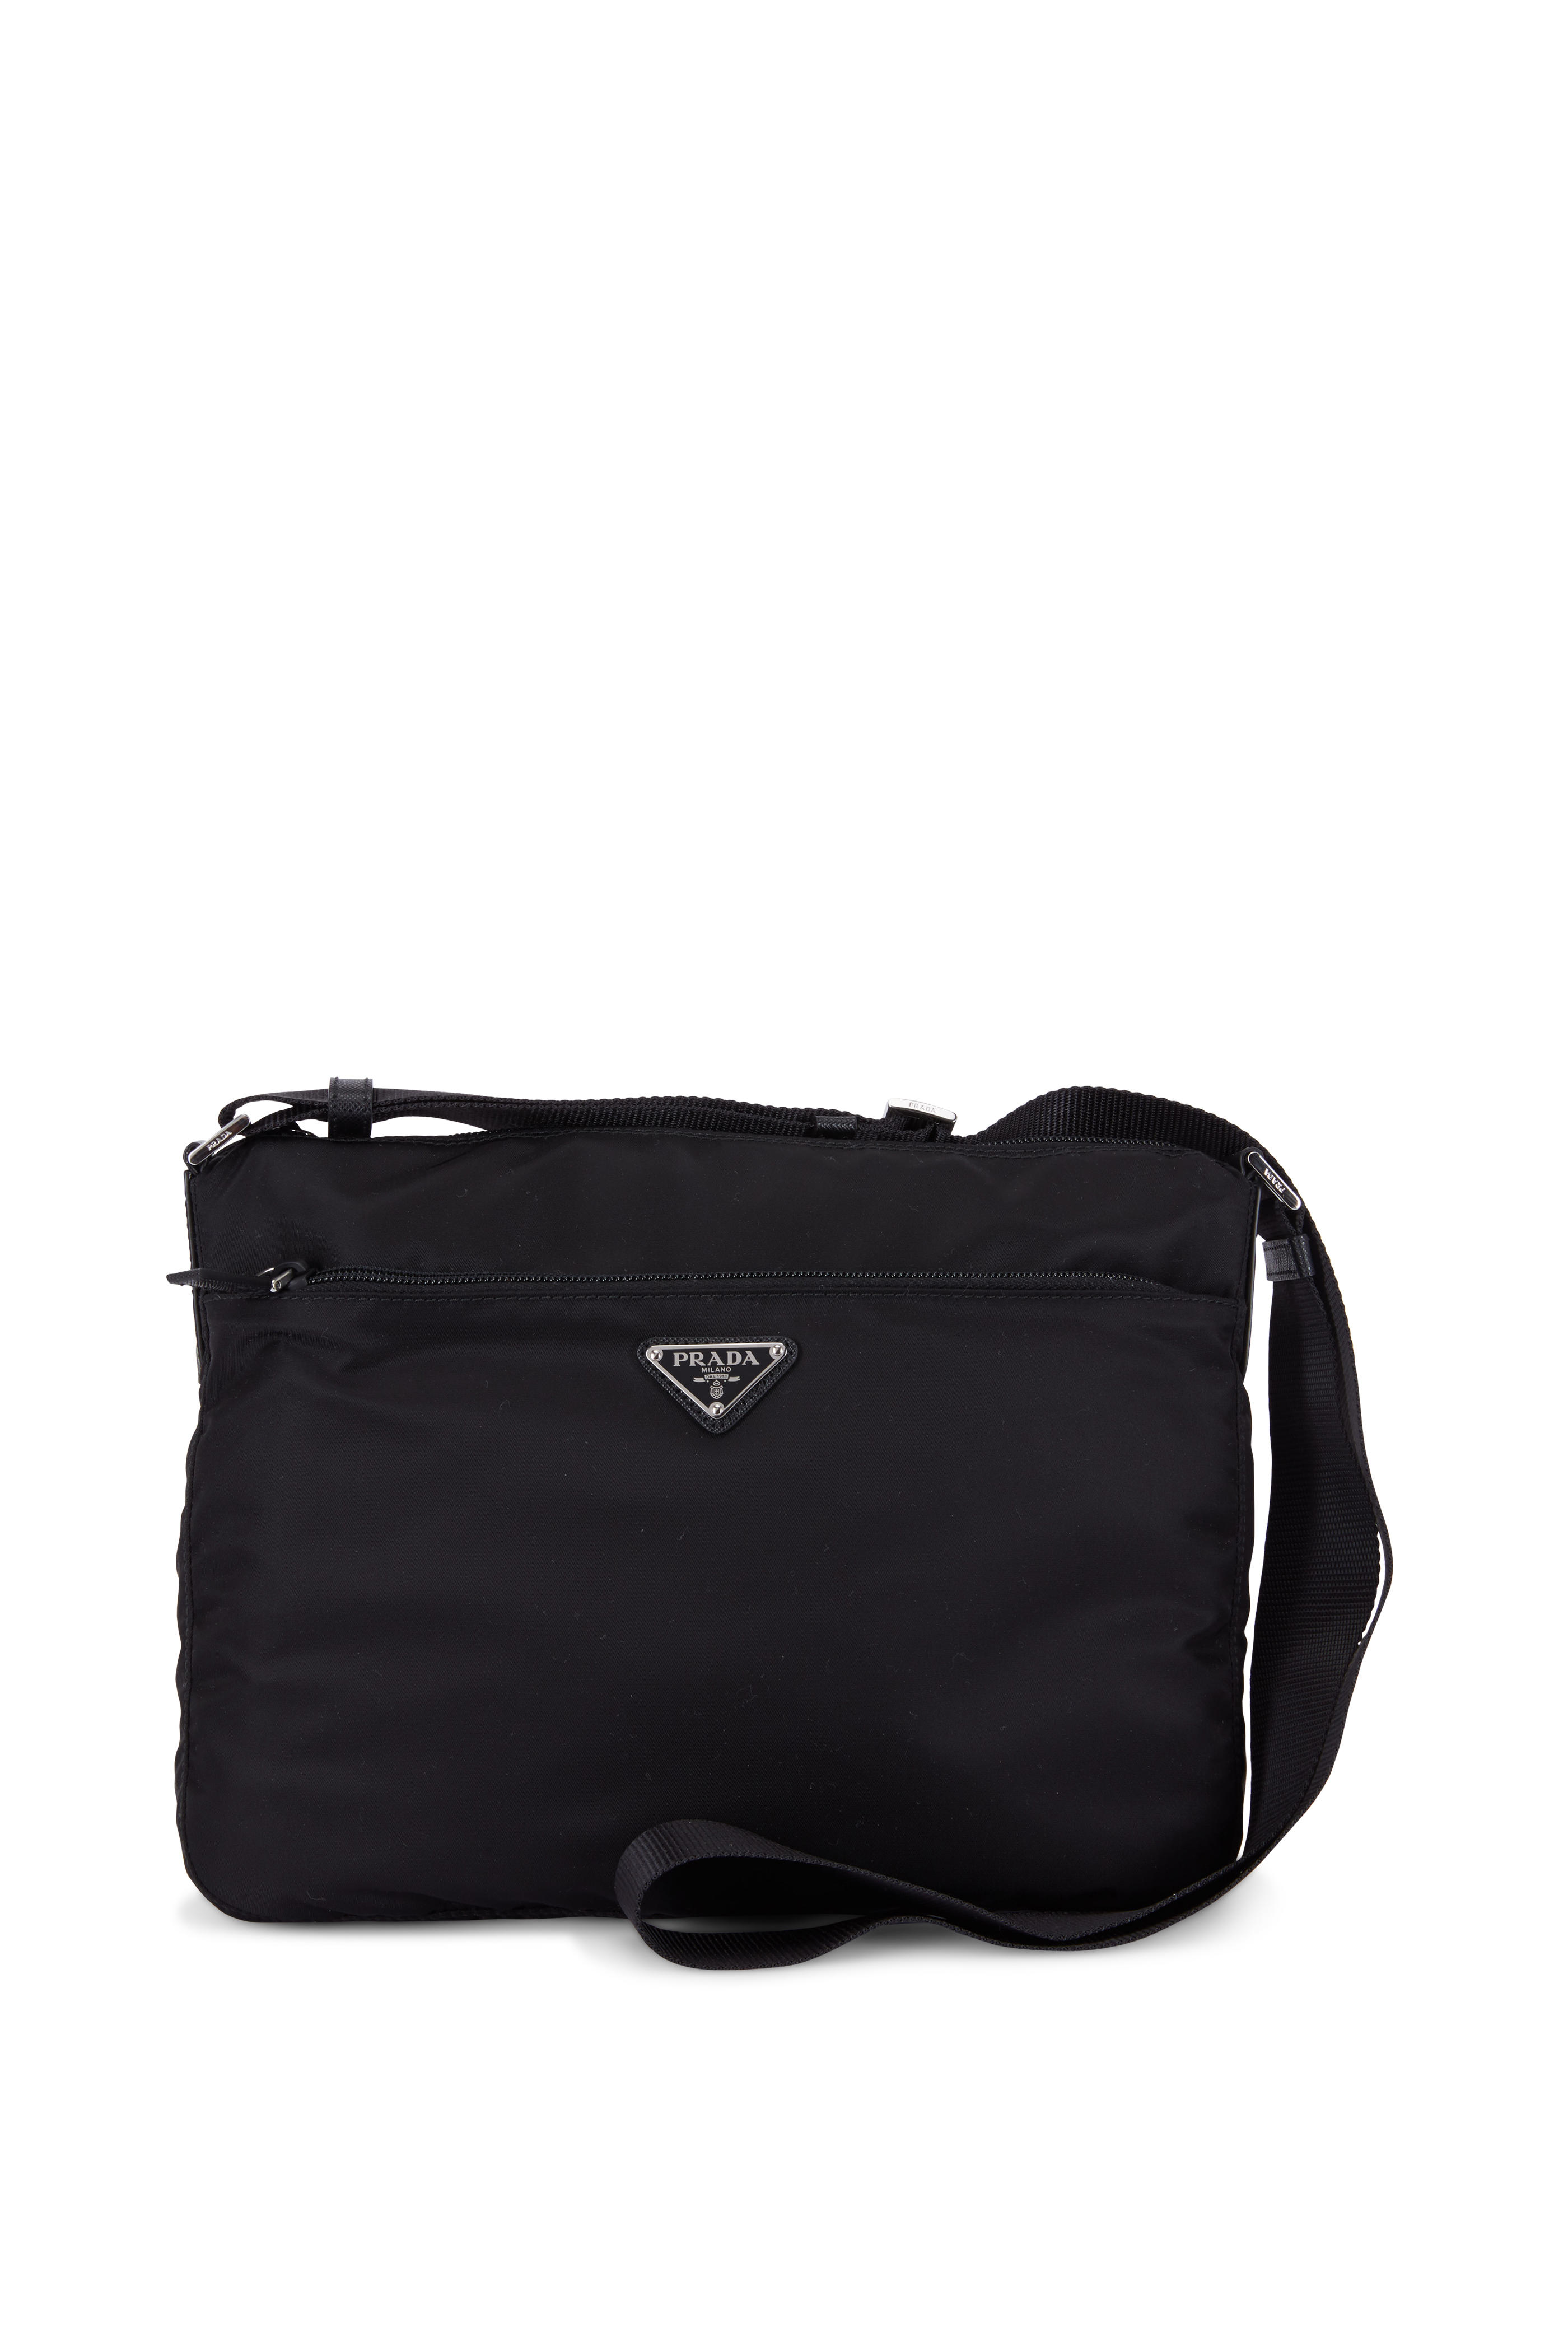 Prada - Black Tessuto Messenger Bag 